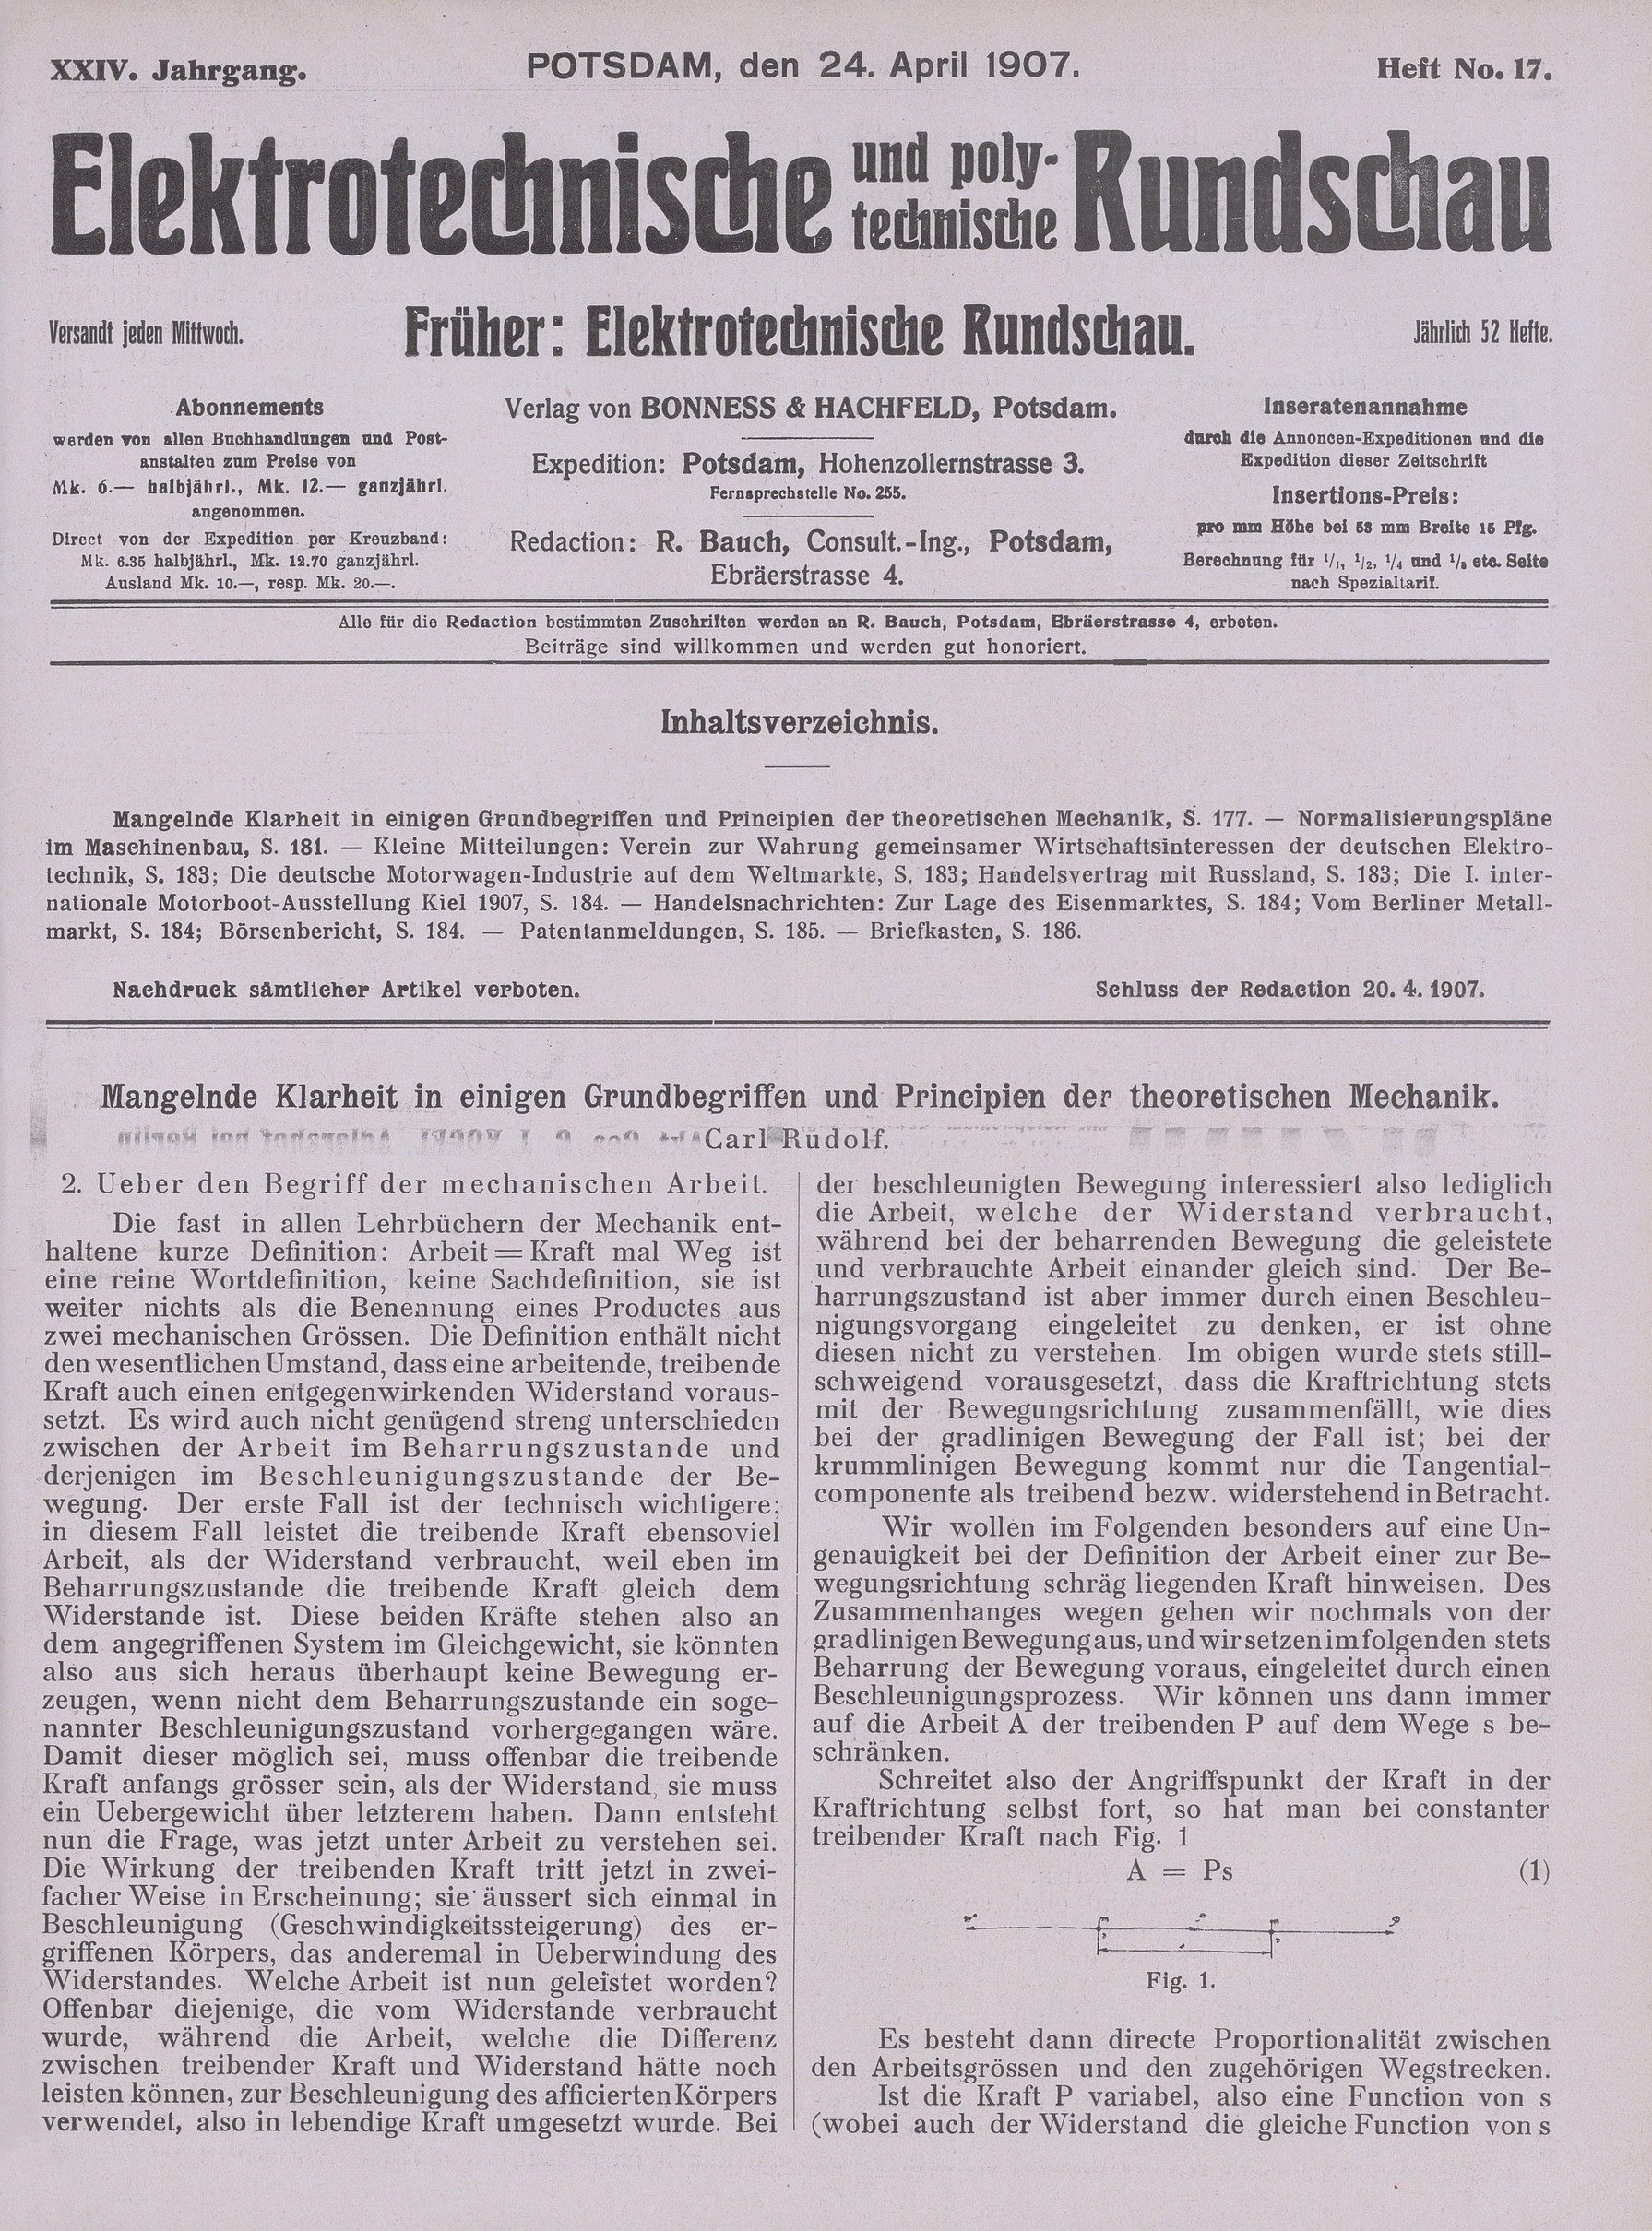 Elektrotechnische und polytechnische Rundschau, XXIV. Jahrgang, Heft No. 17